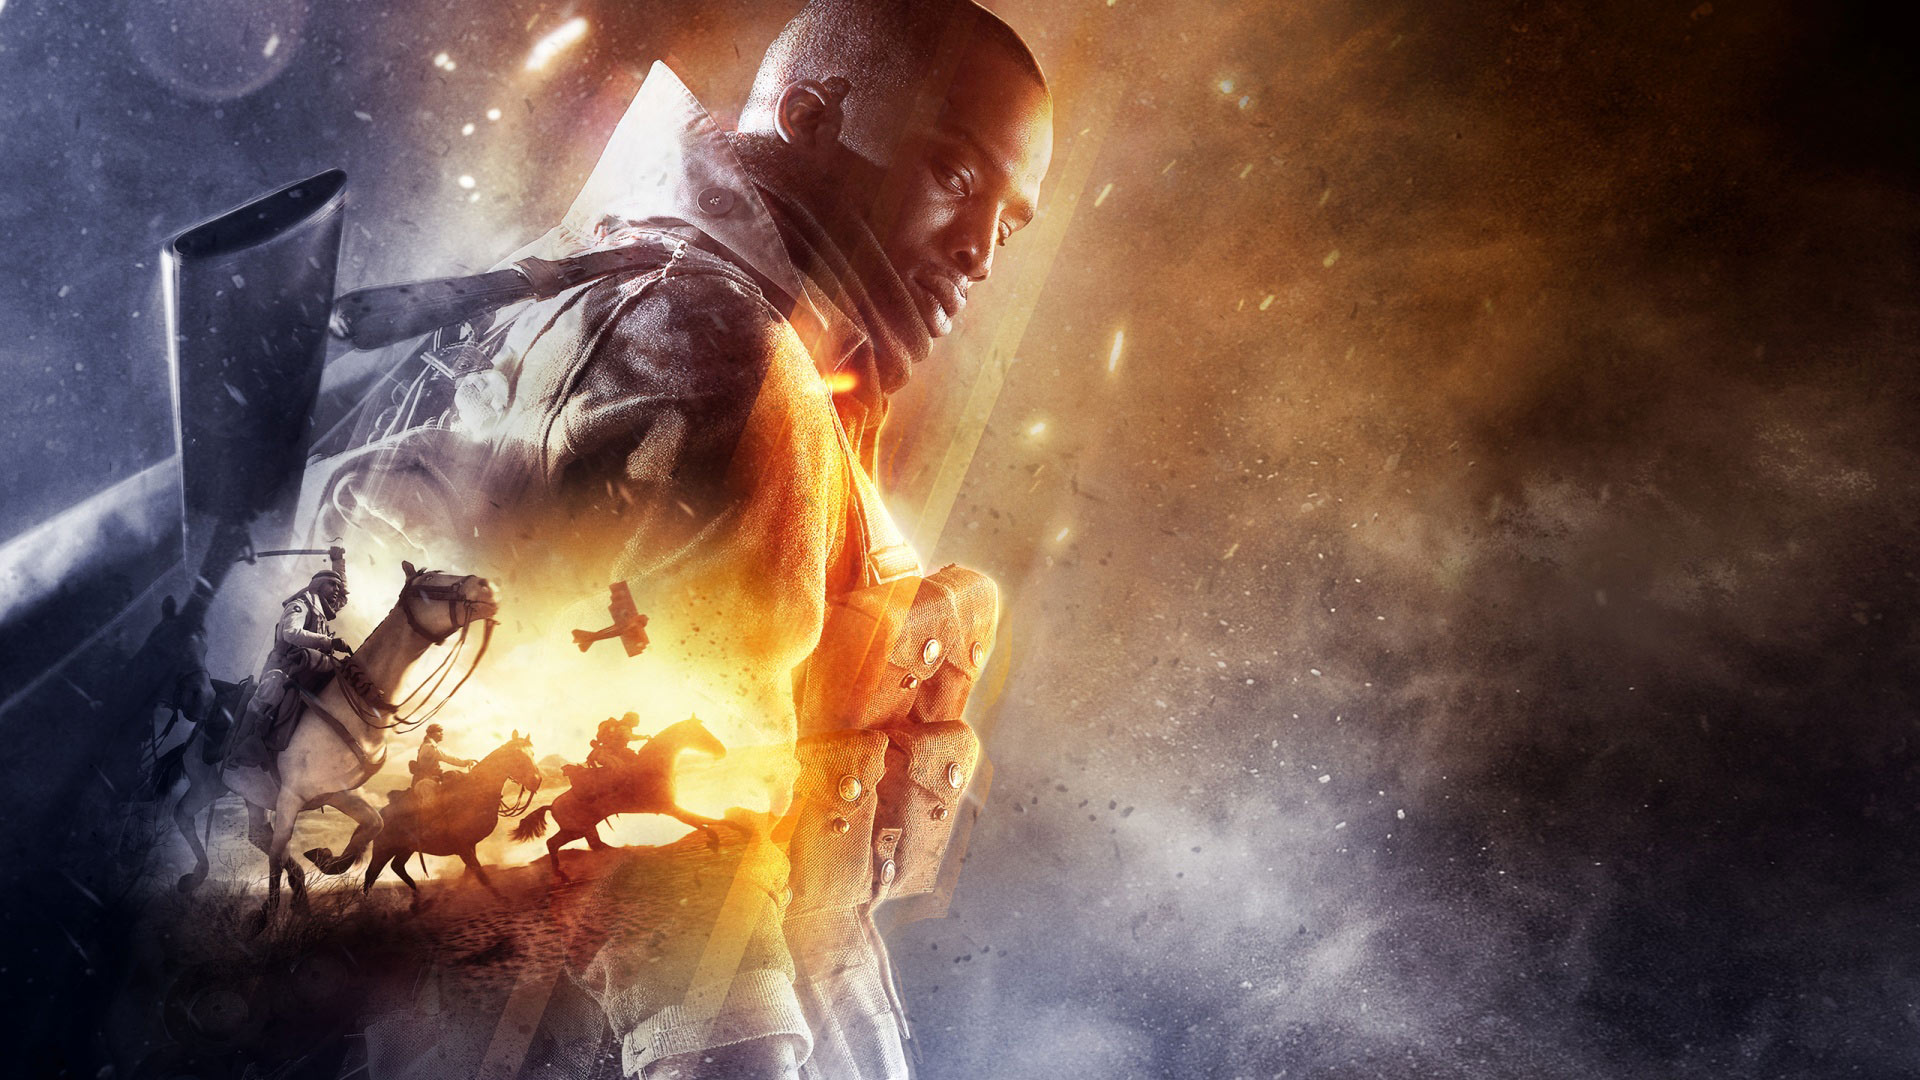 Papel De Parede Battlefield 1 Hd Xbox One Ps4 Pc Papel De Parede